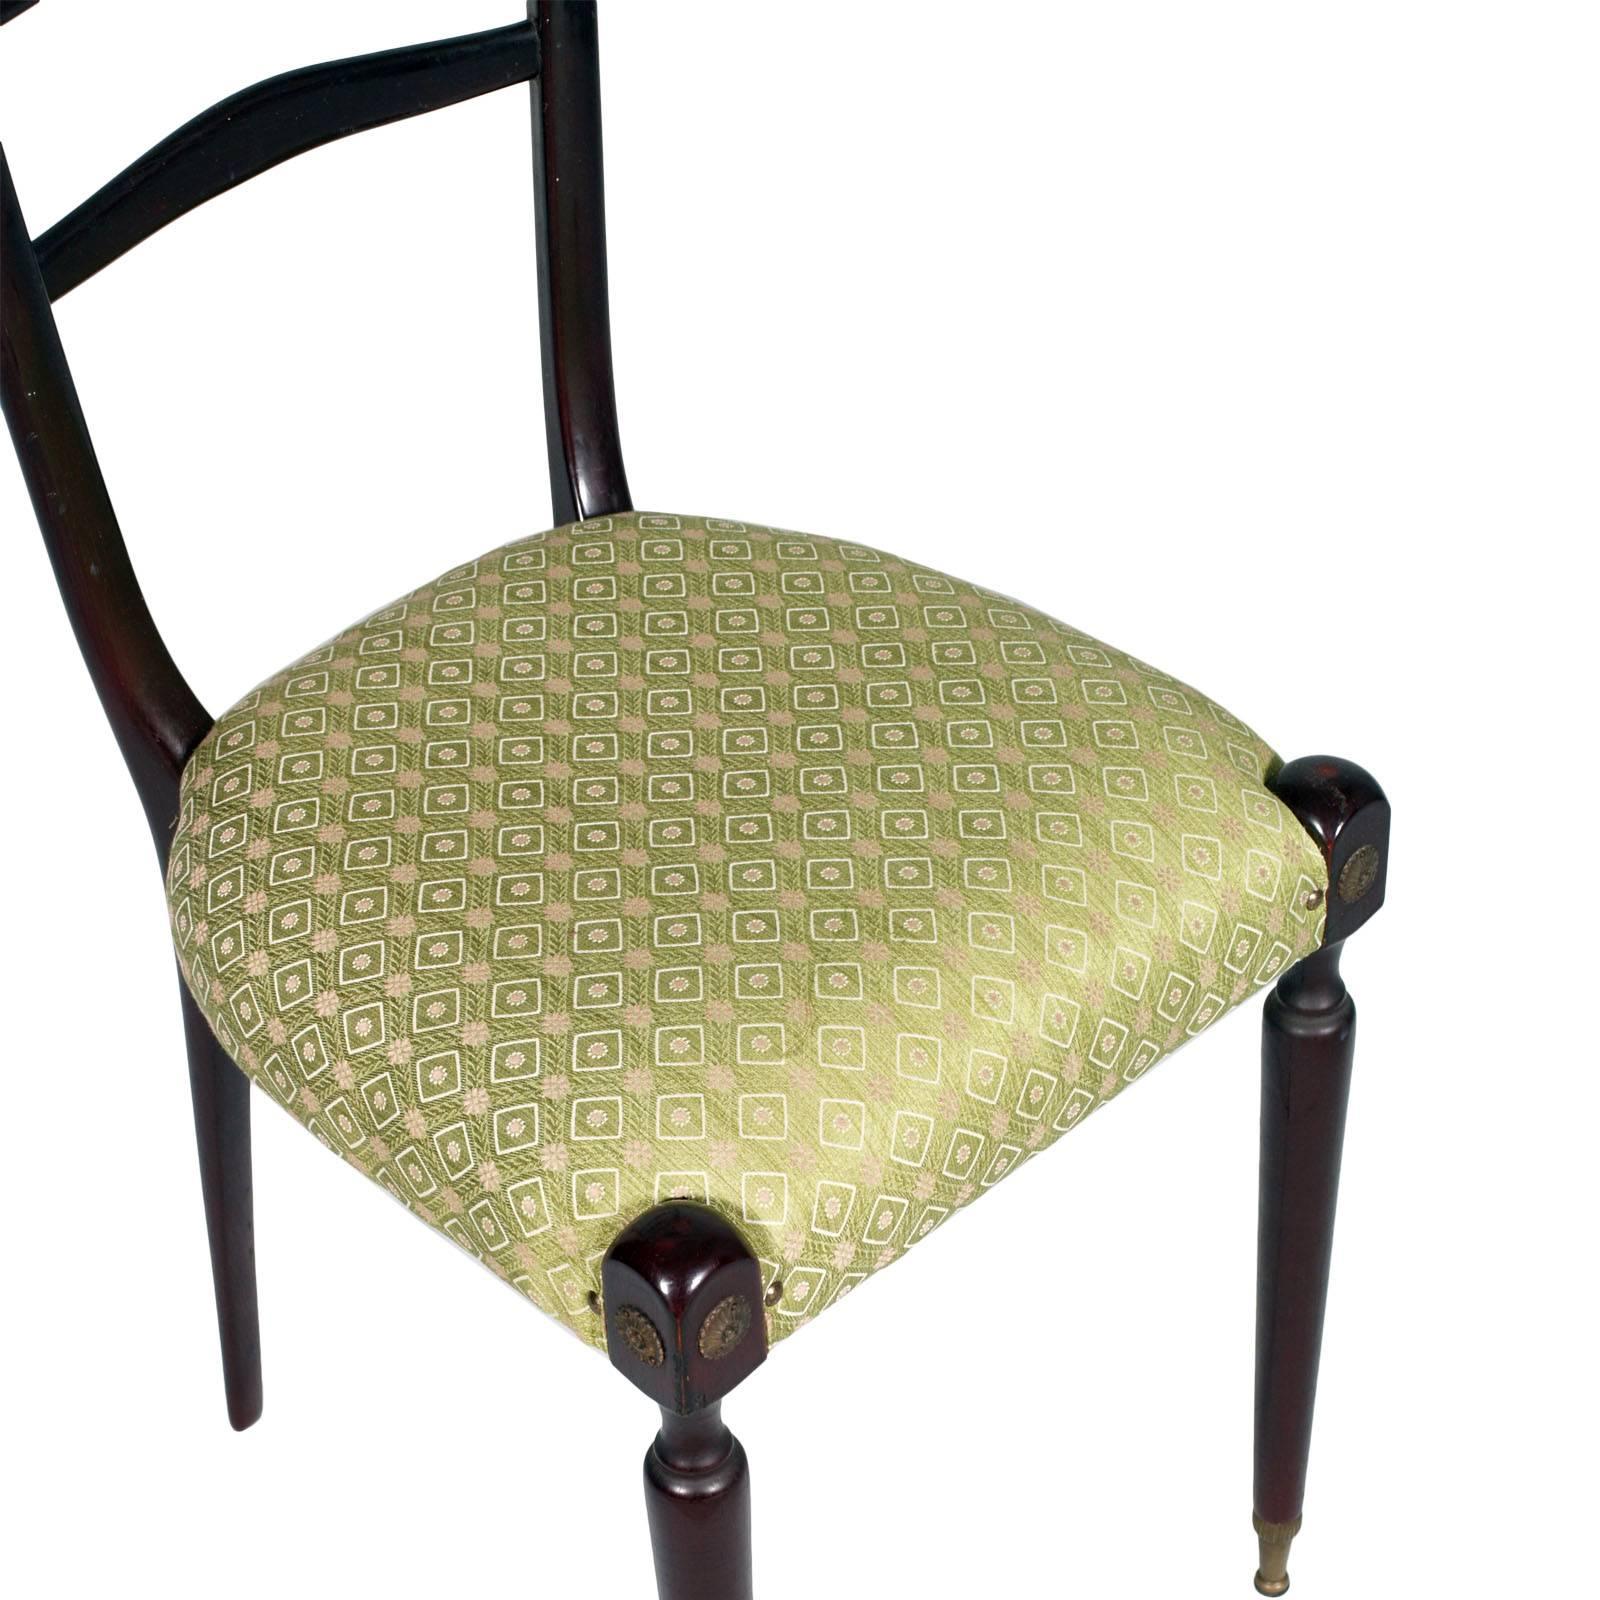 Ein Paar Chiavari-Stühle aus ebonisiertem Mahagoni von Paolo Buffa. Die Stühle haben eine originale Stoffbestuhlung mit geometrischen Mustern und sind in ausgezeichnetem Zustand. Vergoldete Messingfüße.

Maße cm: H 123/48, B 40, T 44.